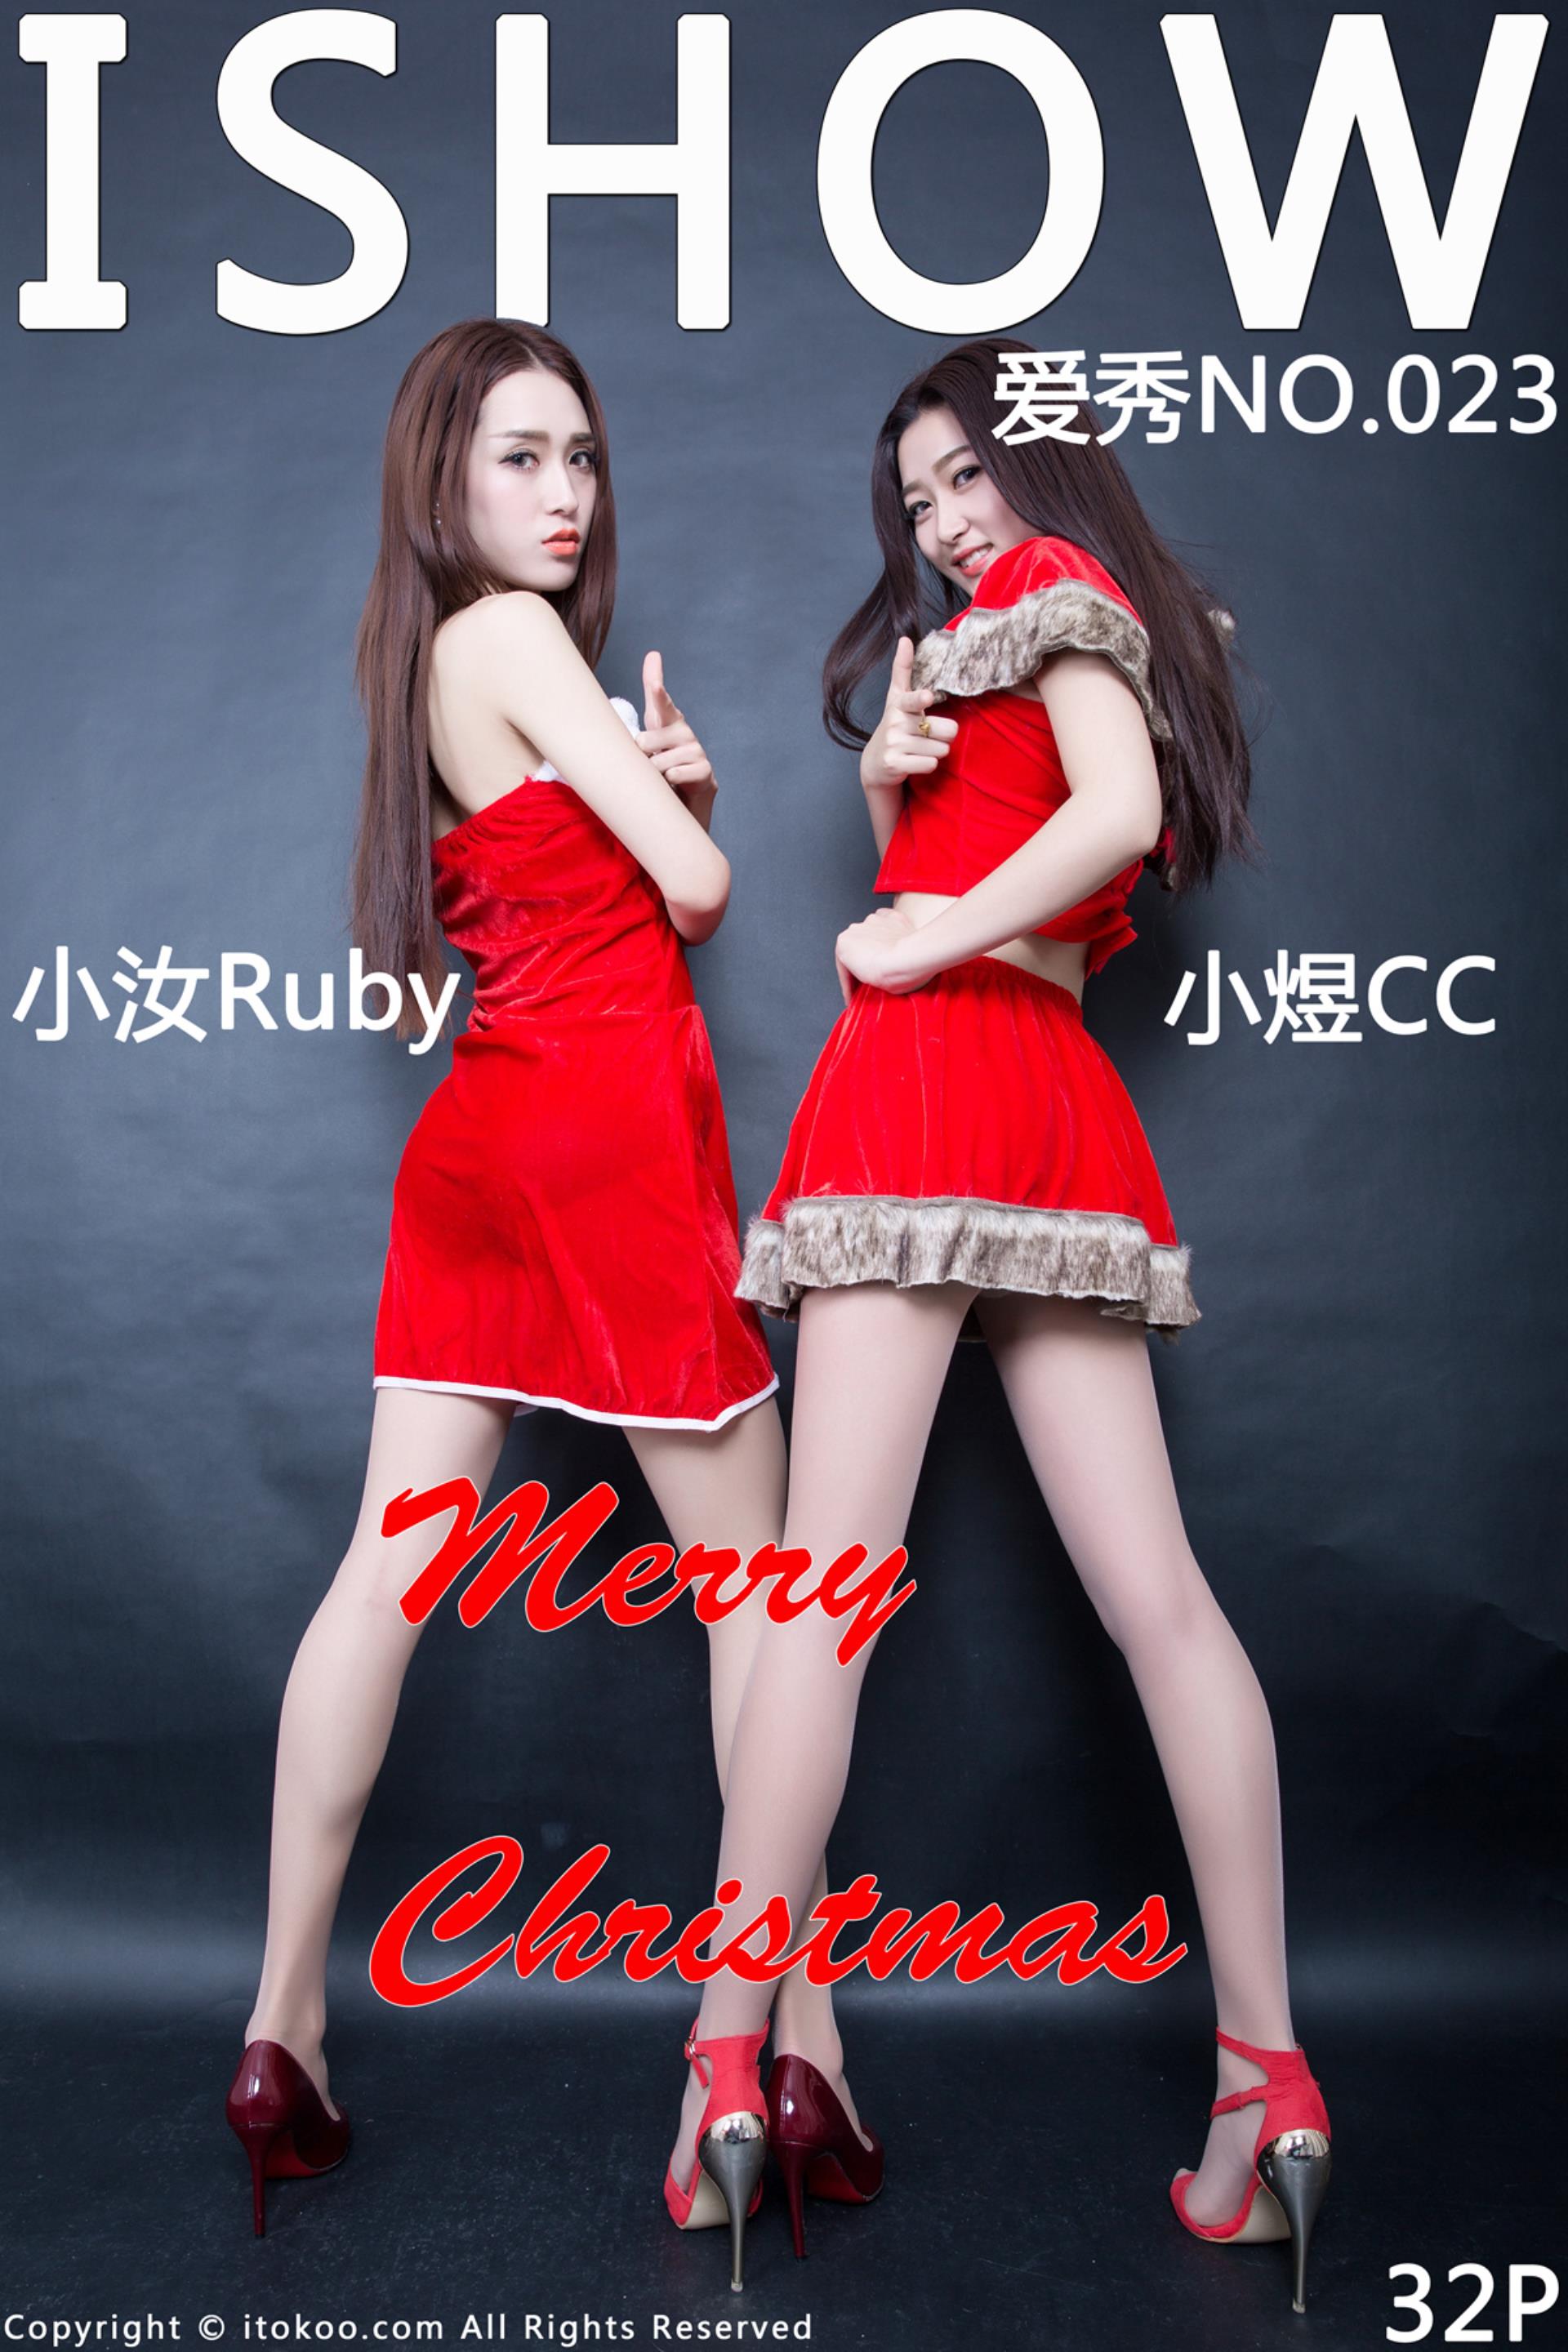 [ISHOW爱秀] 2015.12.24 No.023 小汝Ruby ＆ 小煜CC Merry Christmas[33P]插图